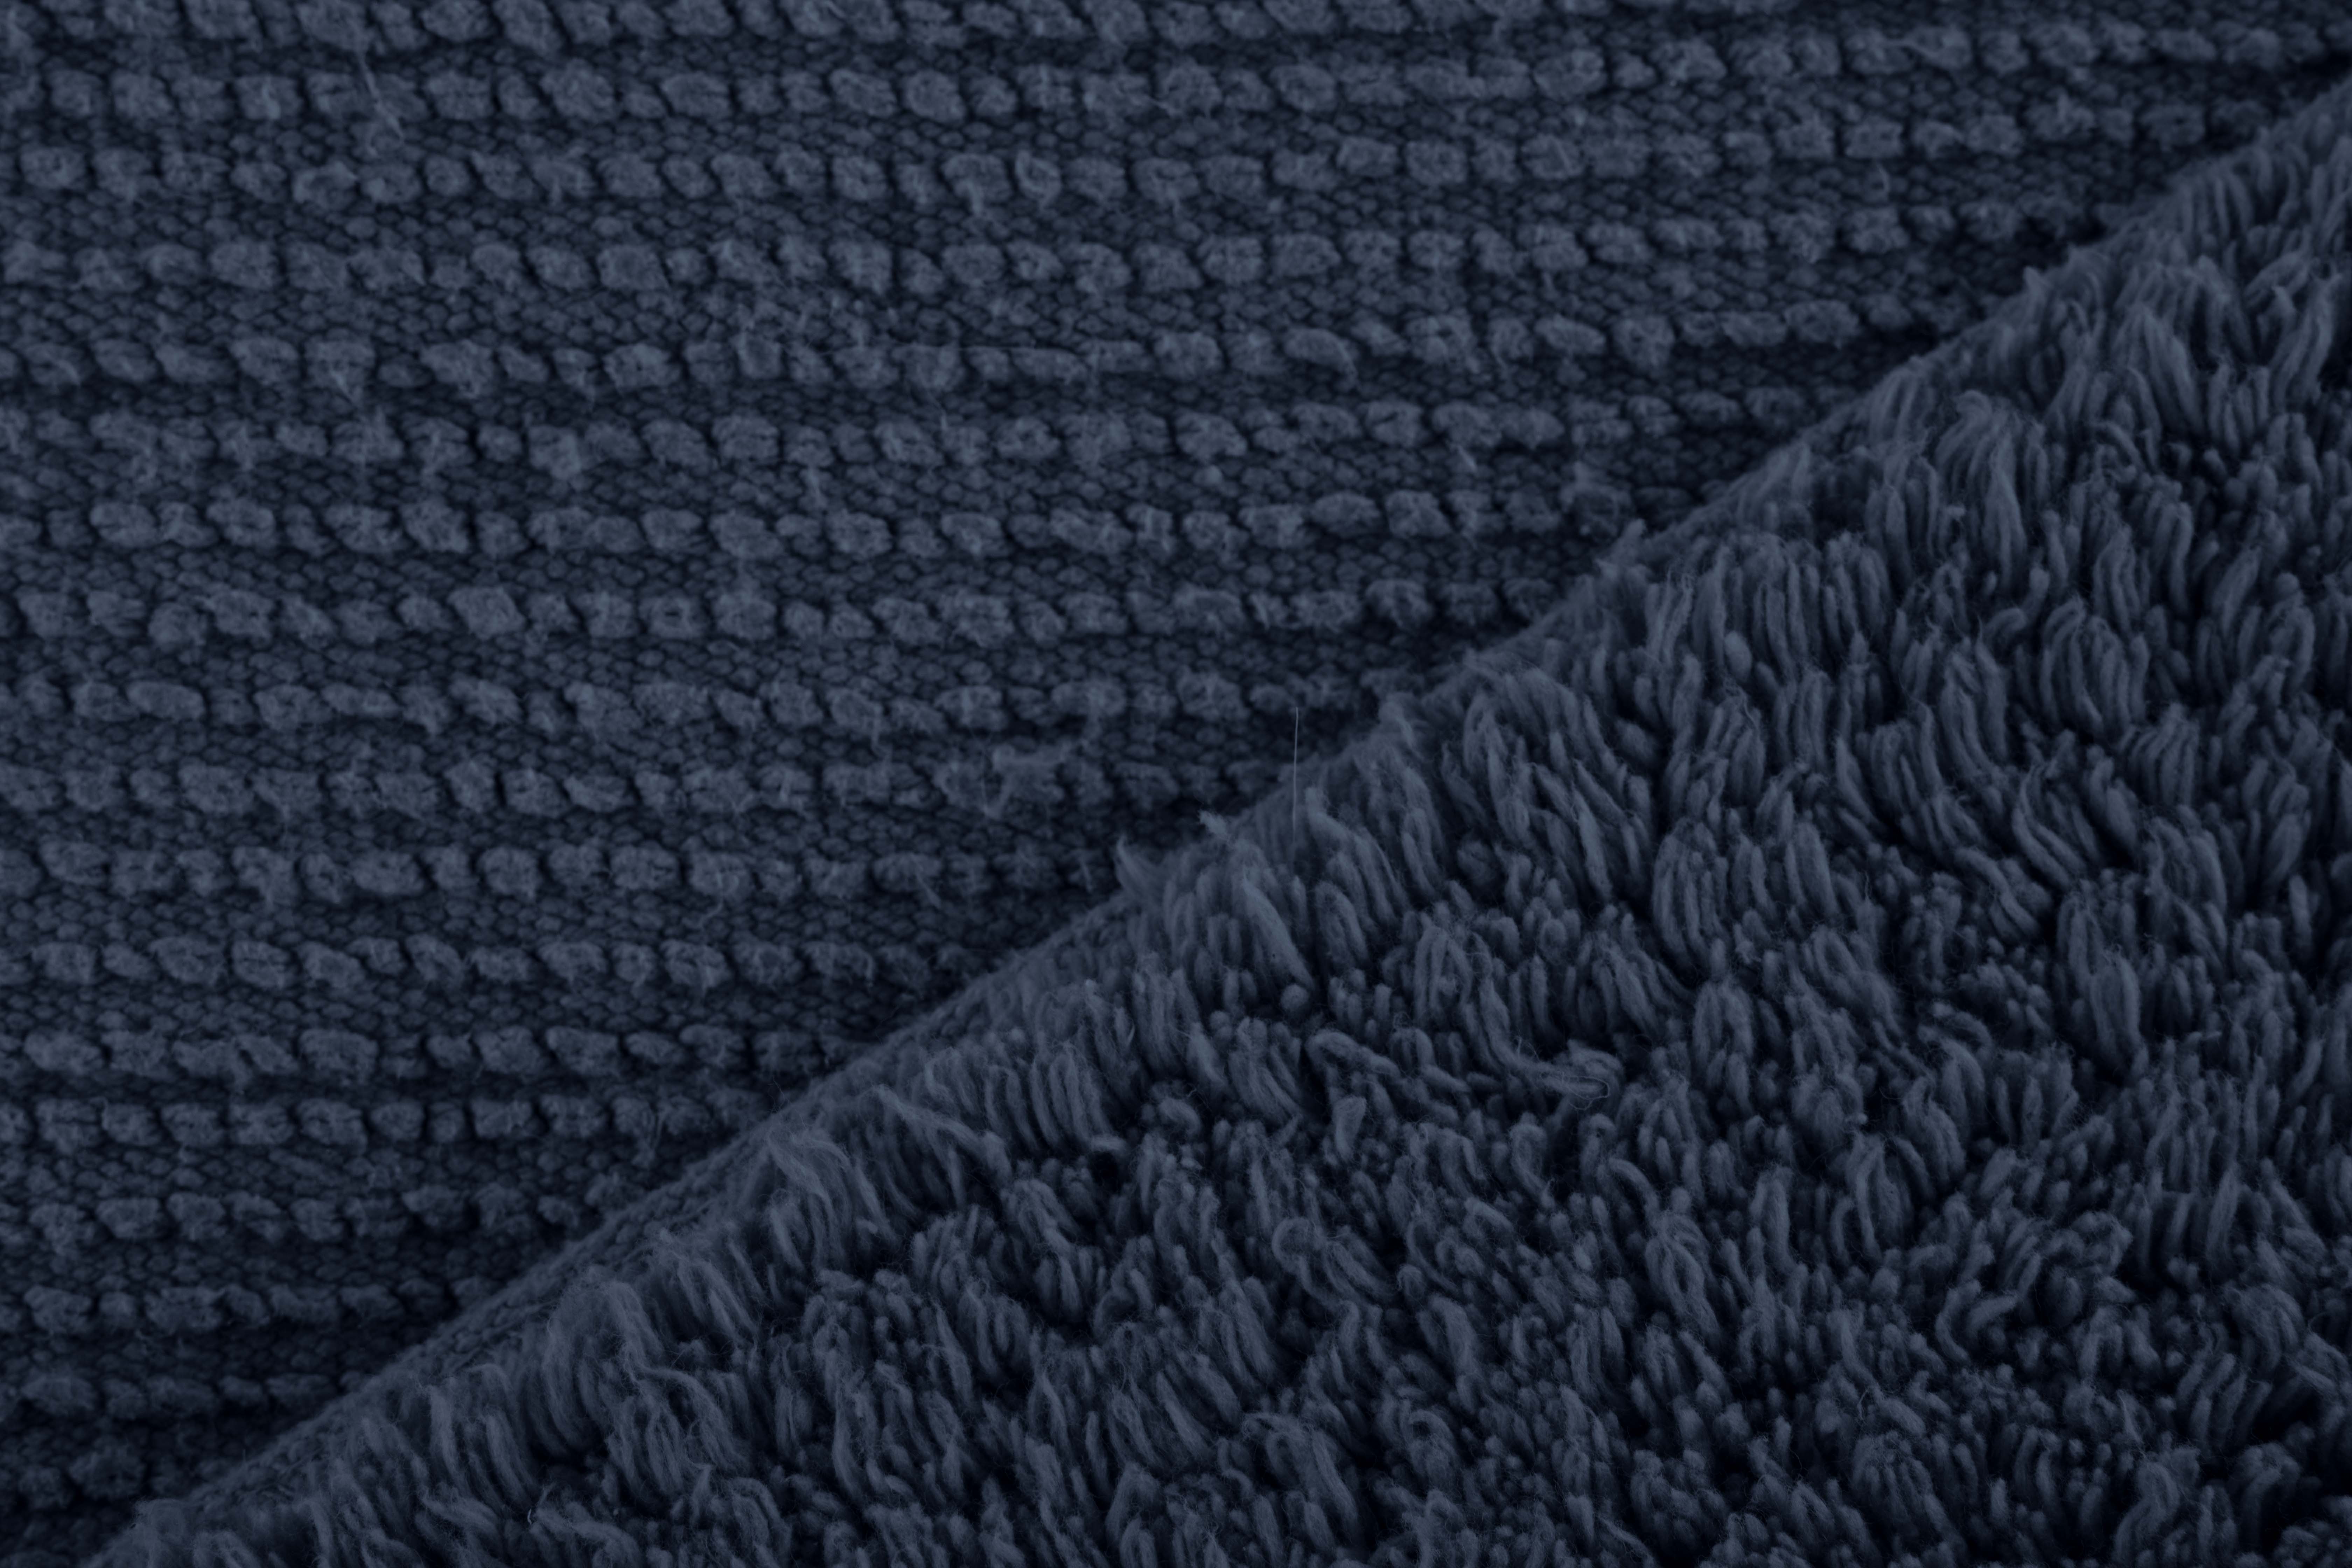 RIVA bath carpet - cotton anti-slip, 60x60cm, blue insigna